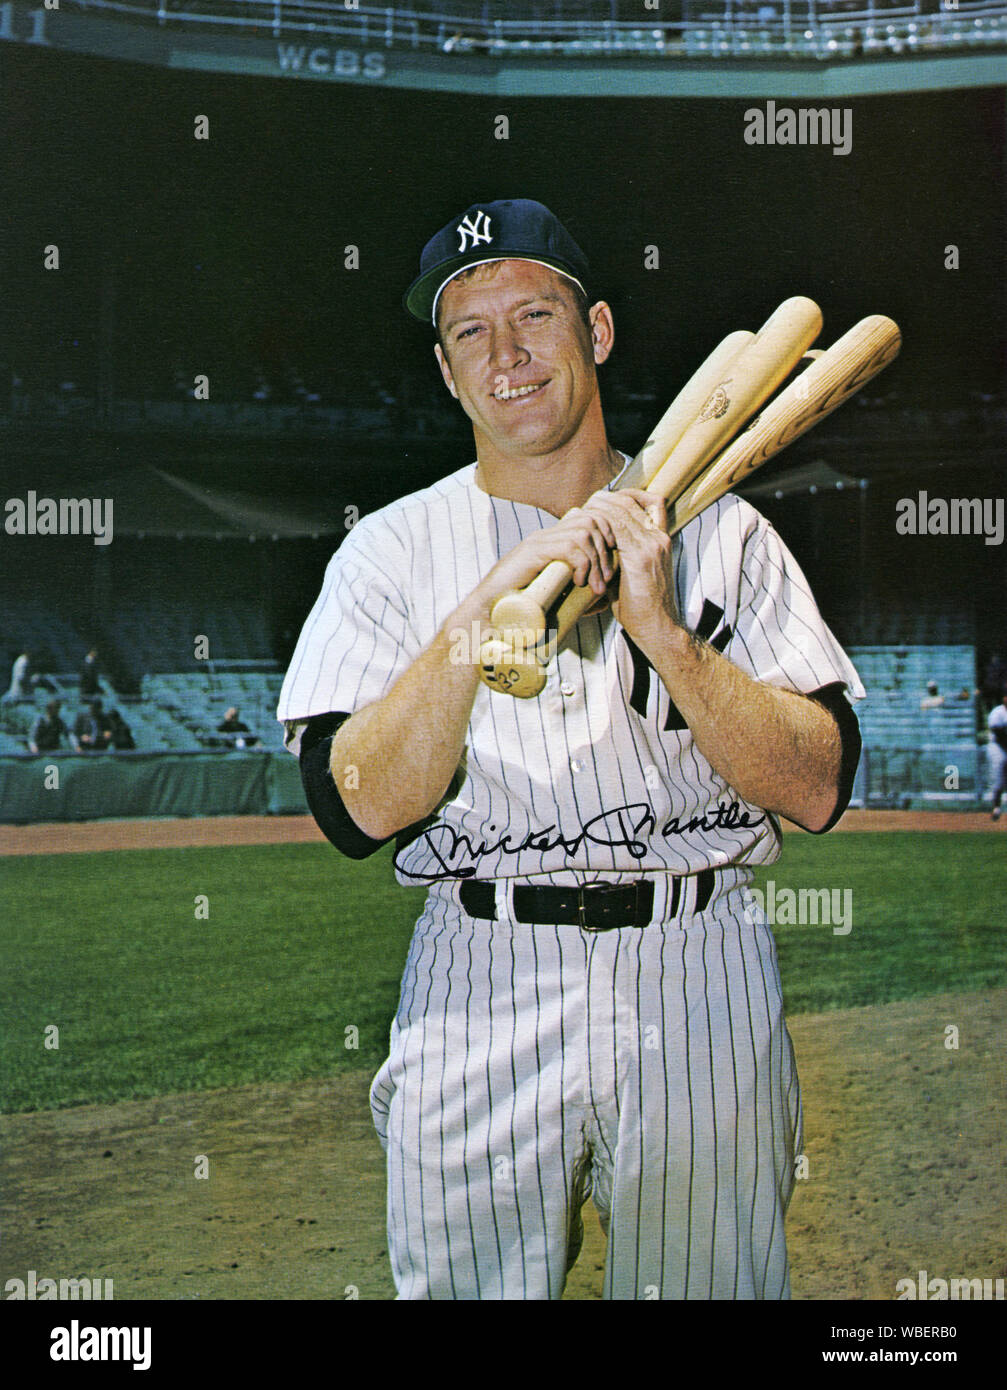 Pose photo de Mickey Mantle le légendaire joueur de baseball des Yankees de New York dans les années 1950 et 1960. Banque D'Images